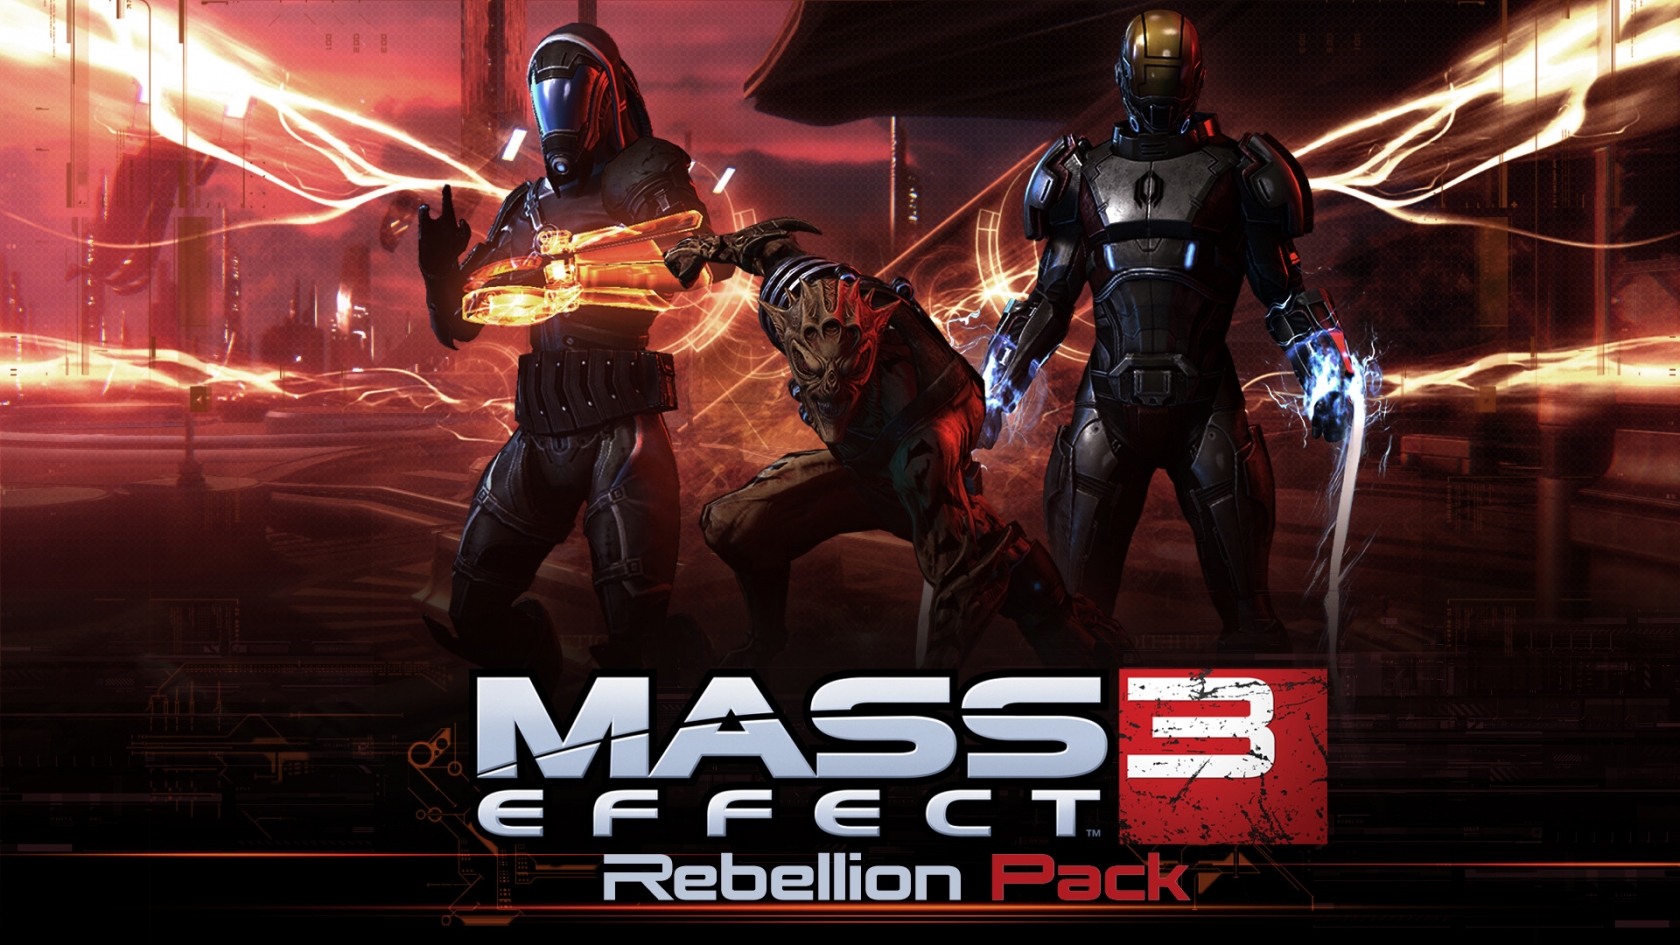 Mass Effect 3 Rebellion Pack for 1680 x 945 HDTV resolution